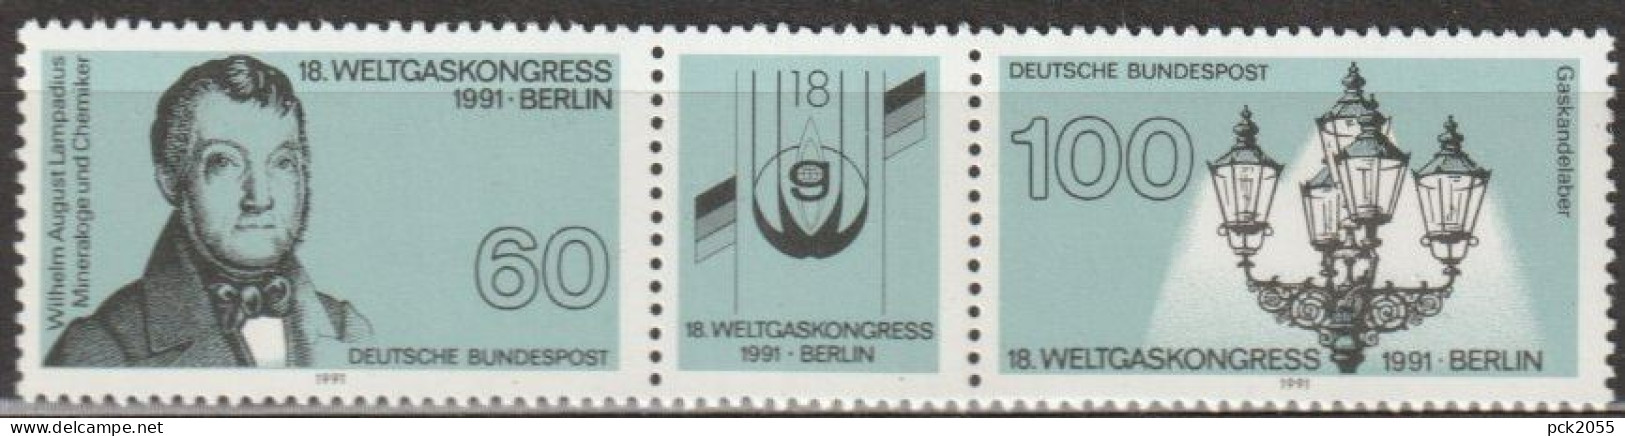 BRD 1991 MiNr.1537 - 1538 3er Streifen ** Postfrisch Weltgaskongress (A2574 )günstige Versandkoste - Nuevos